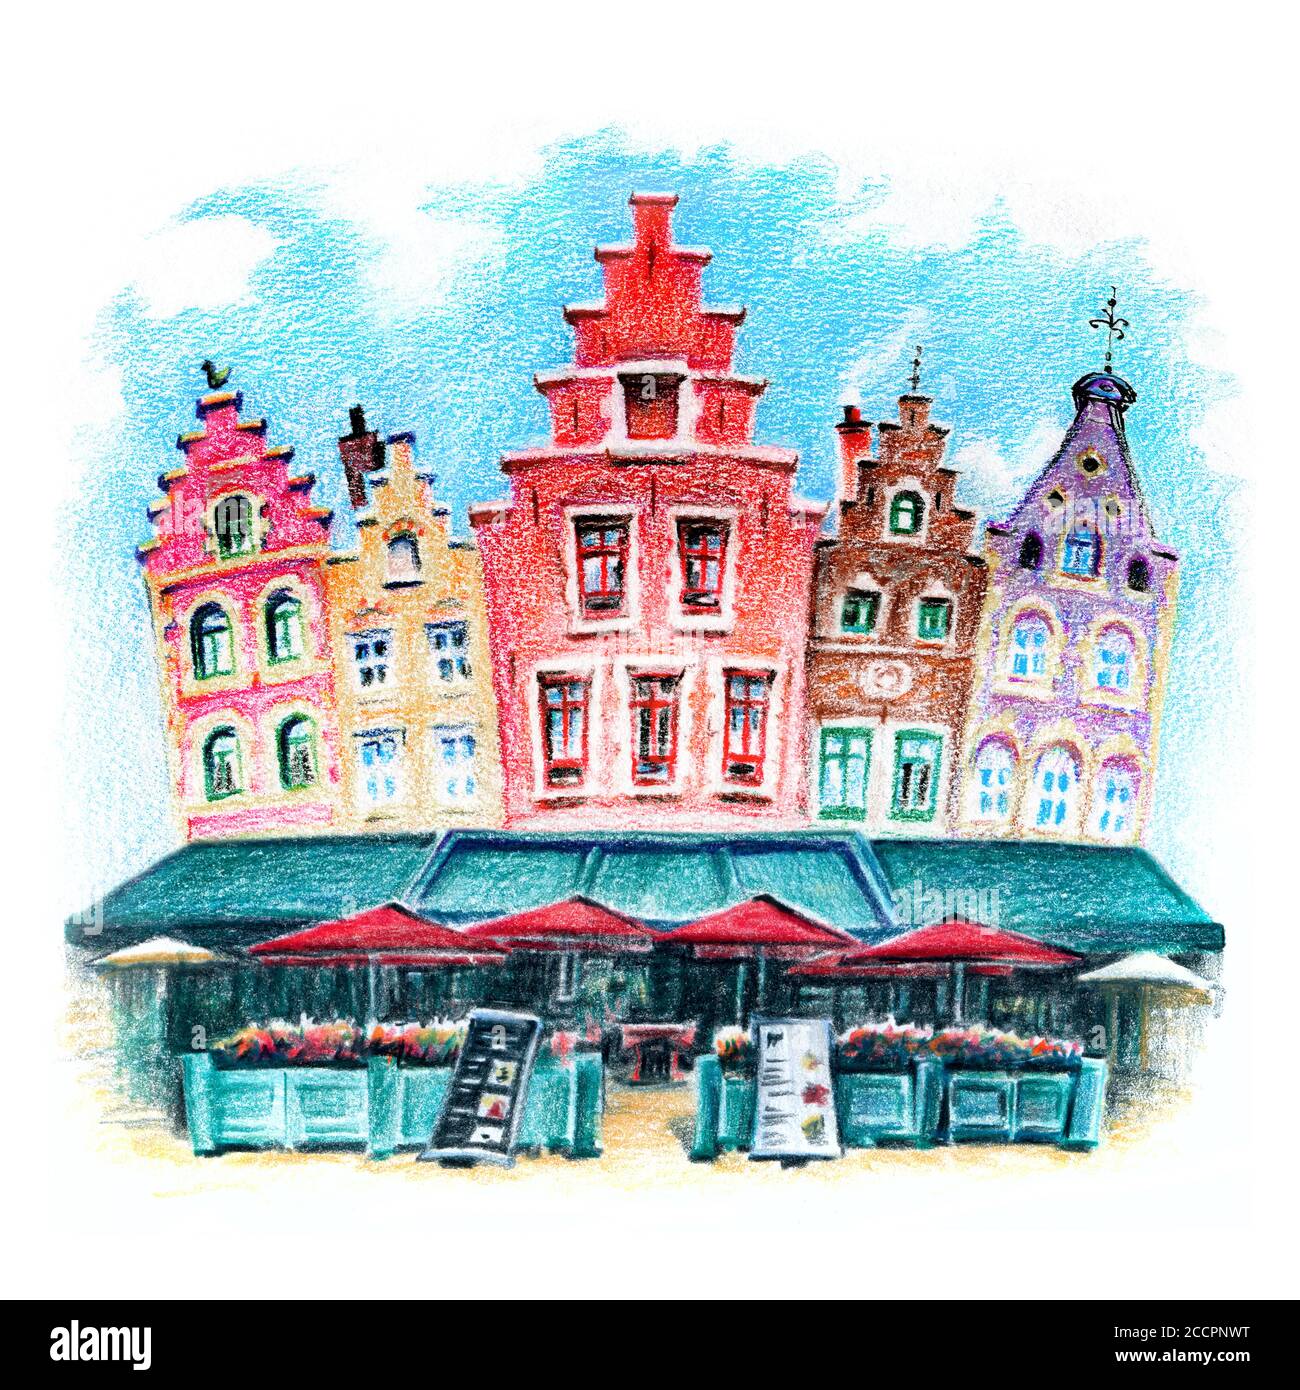 Stadtskizze von schönen mittelalterlichen Häusern auf dem Grote Markt in Brügge, Belgien, Belgien. Zeichnung mit Buntstiften Stockfoto